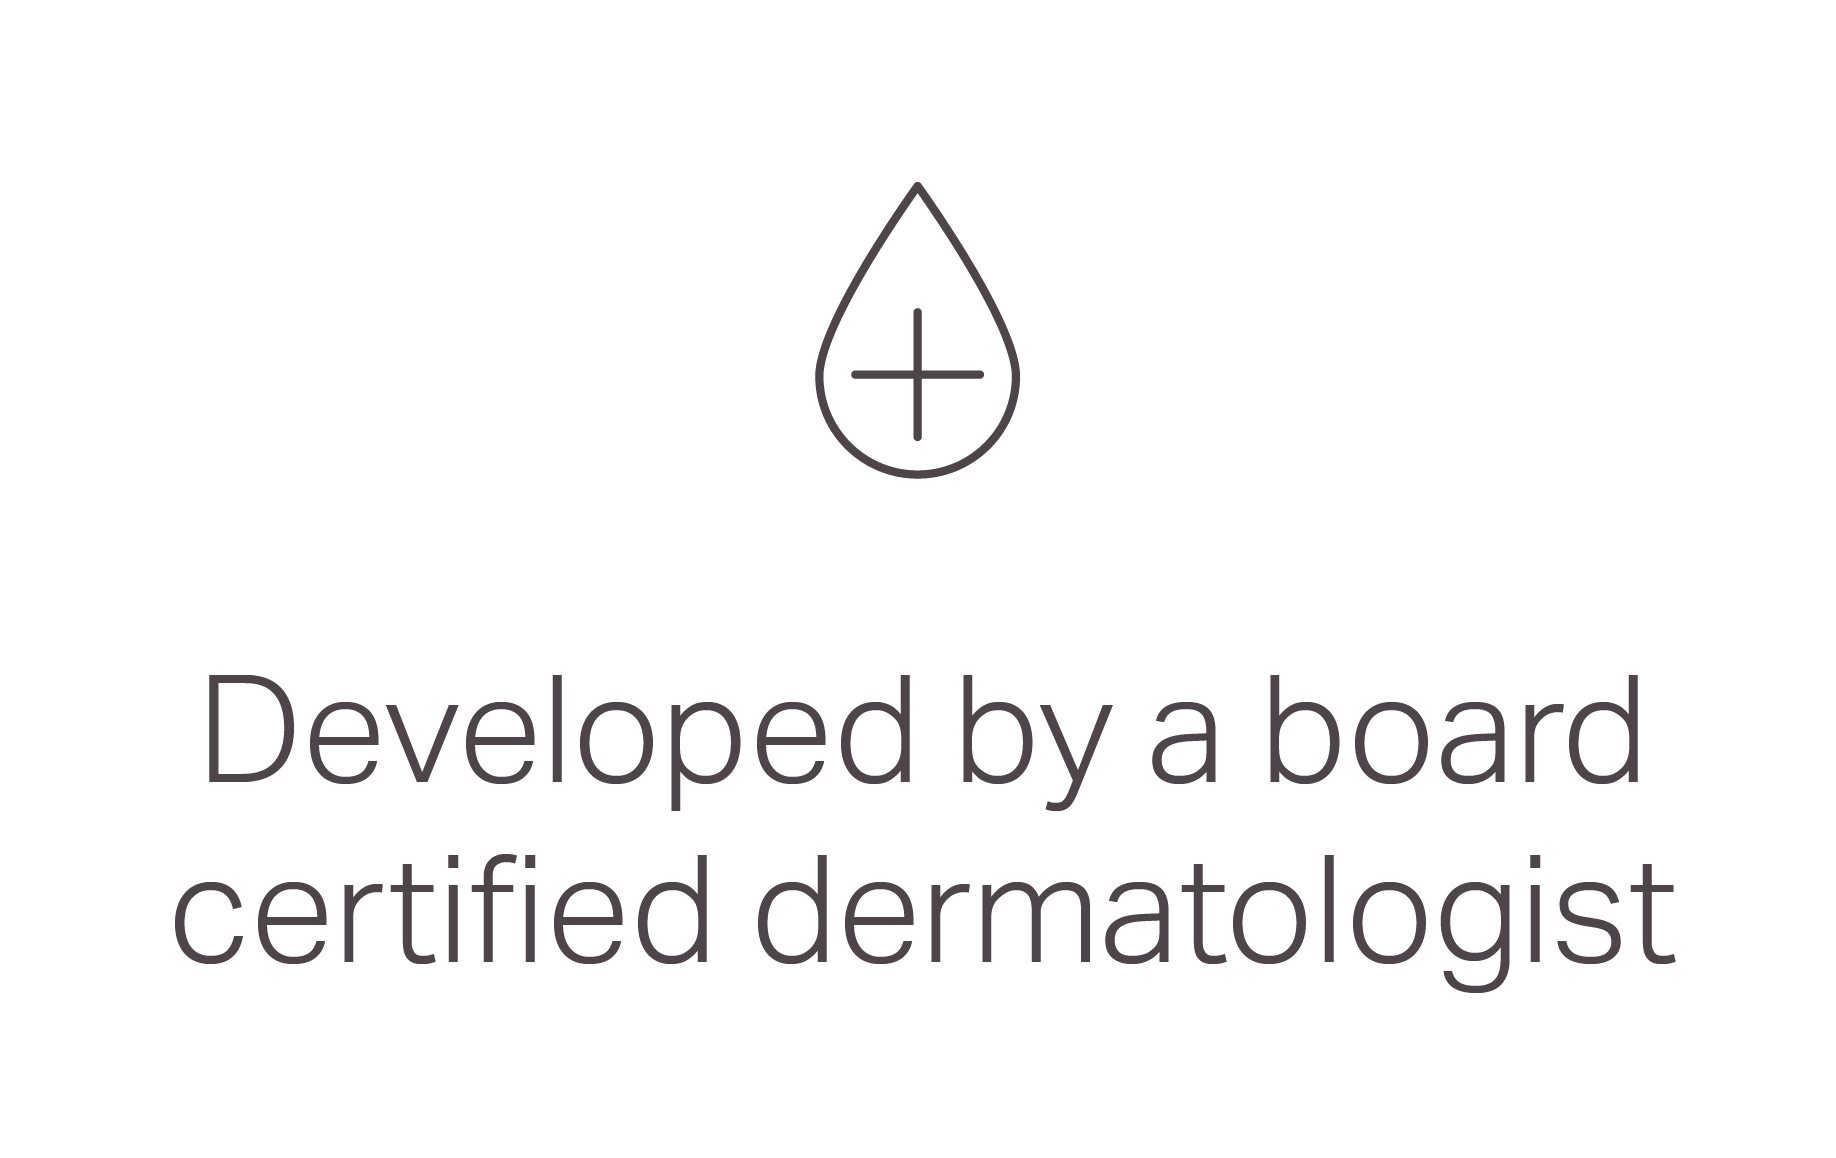 Developed by a board certified dermatologist